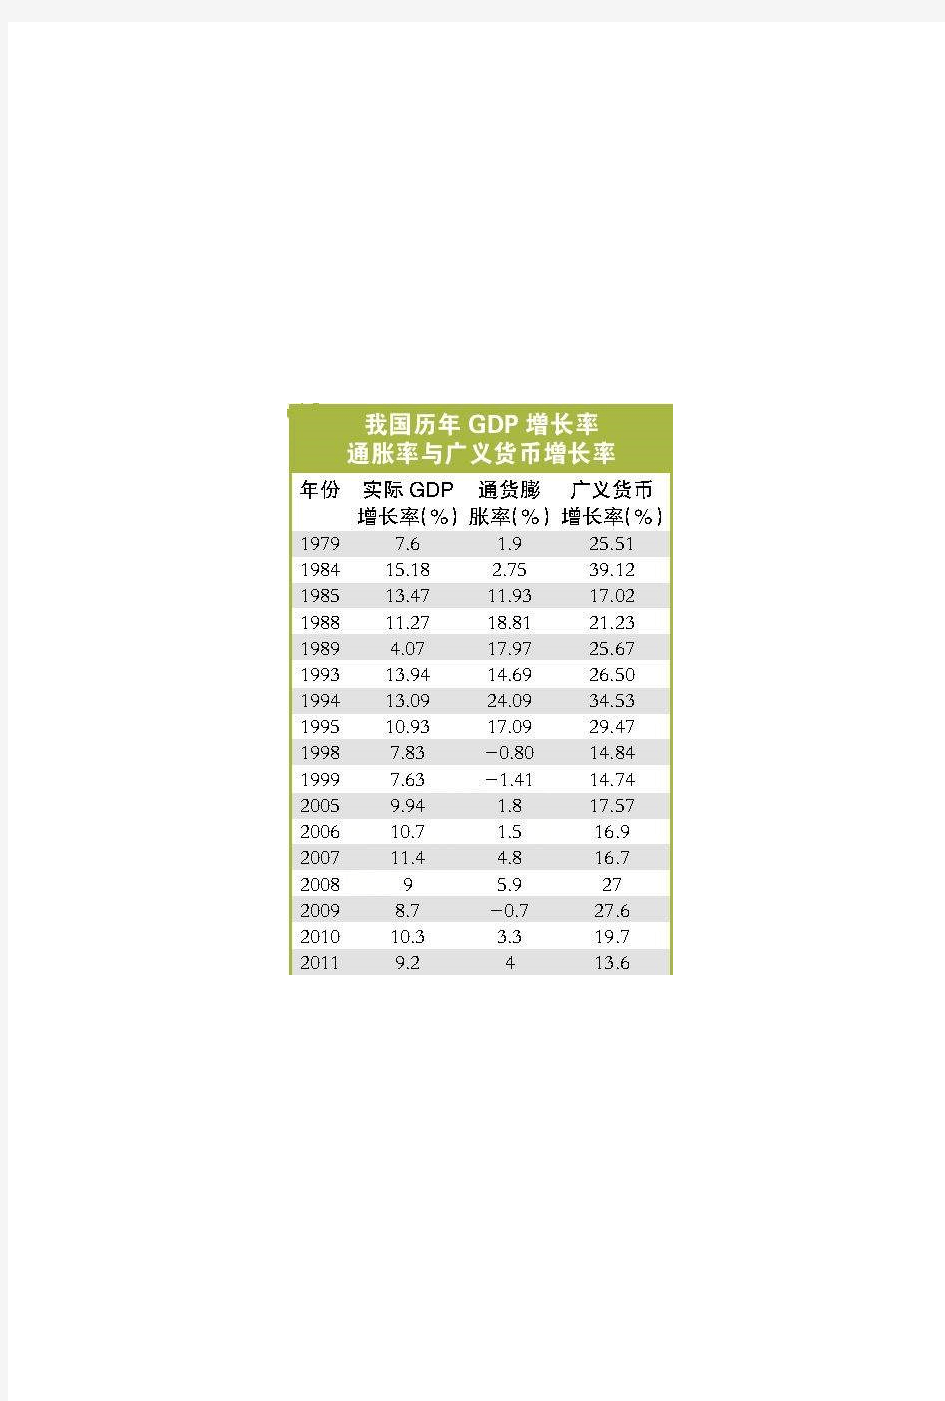 中国2020通胀率一览表